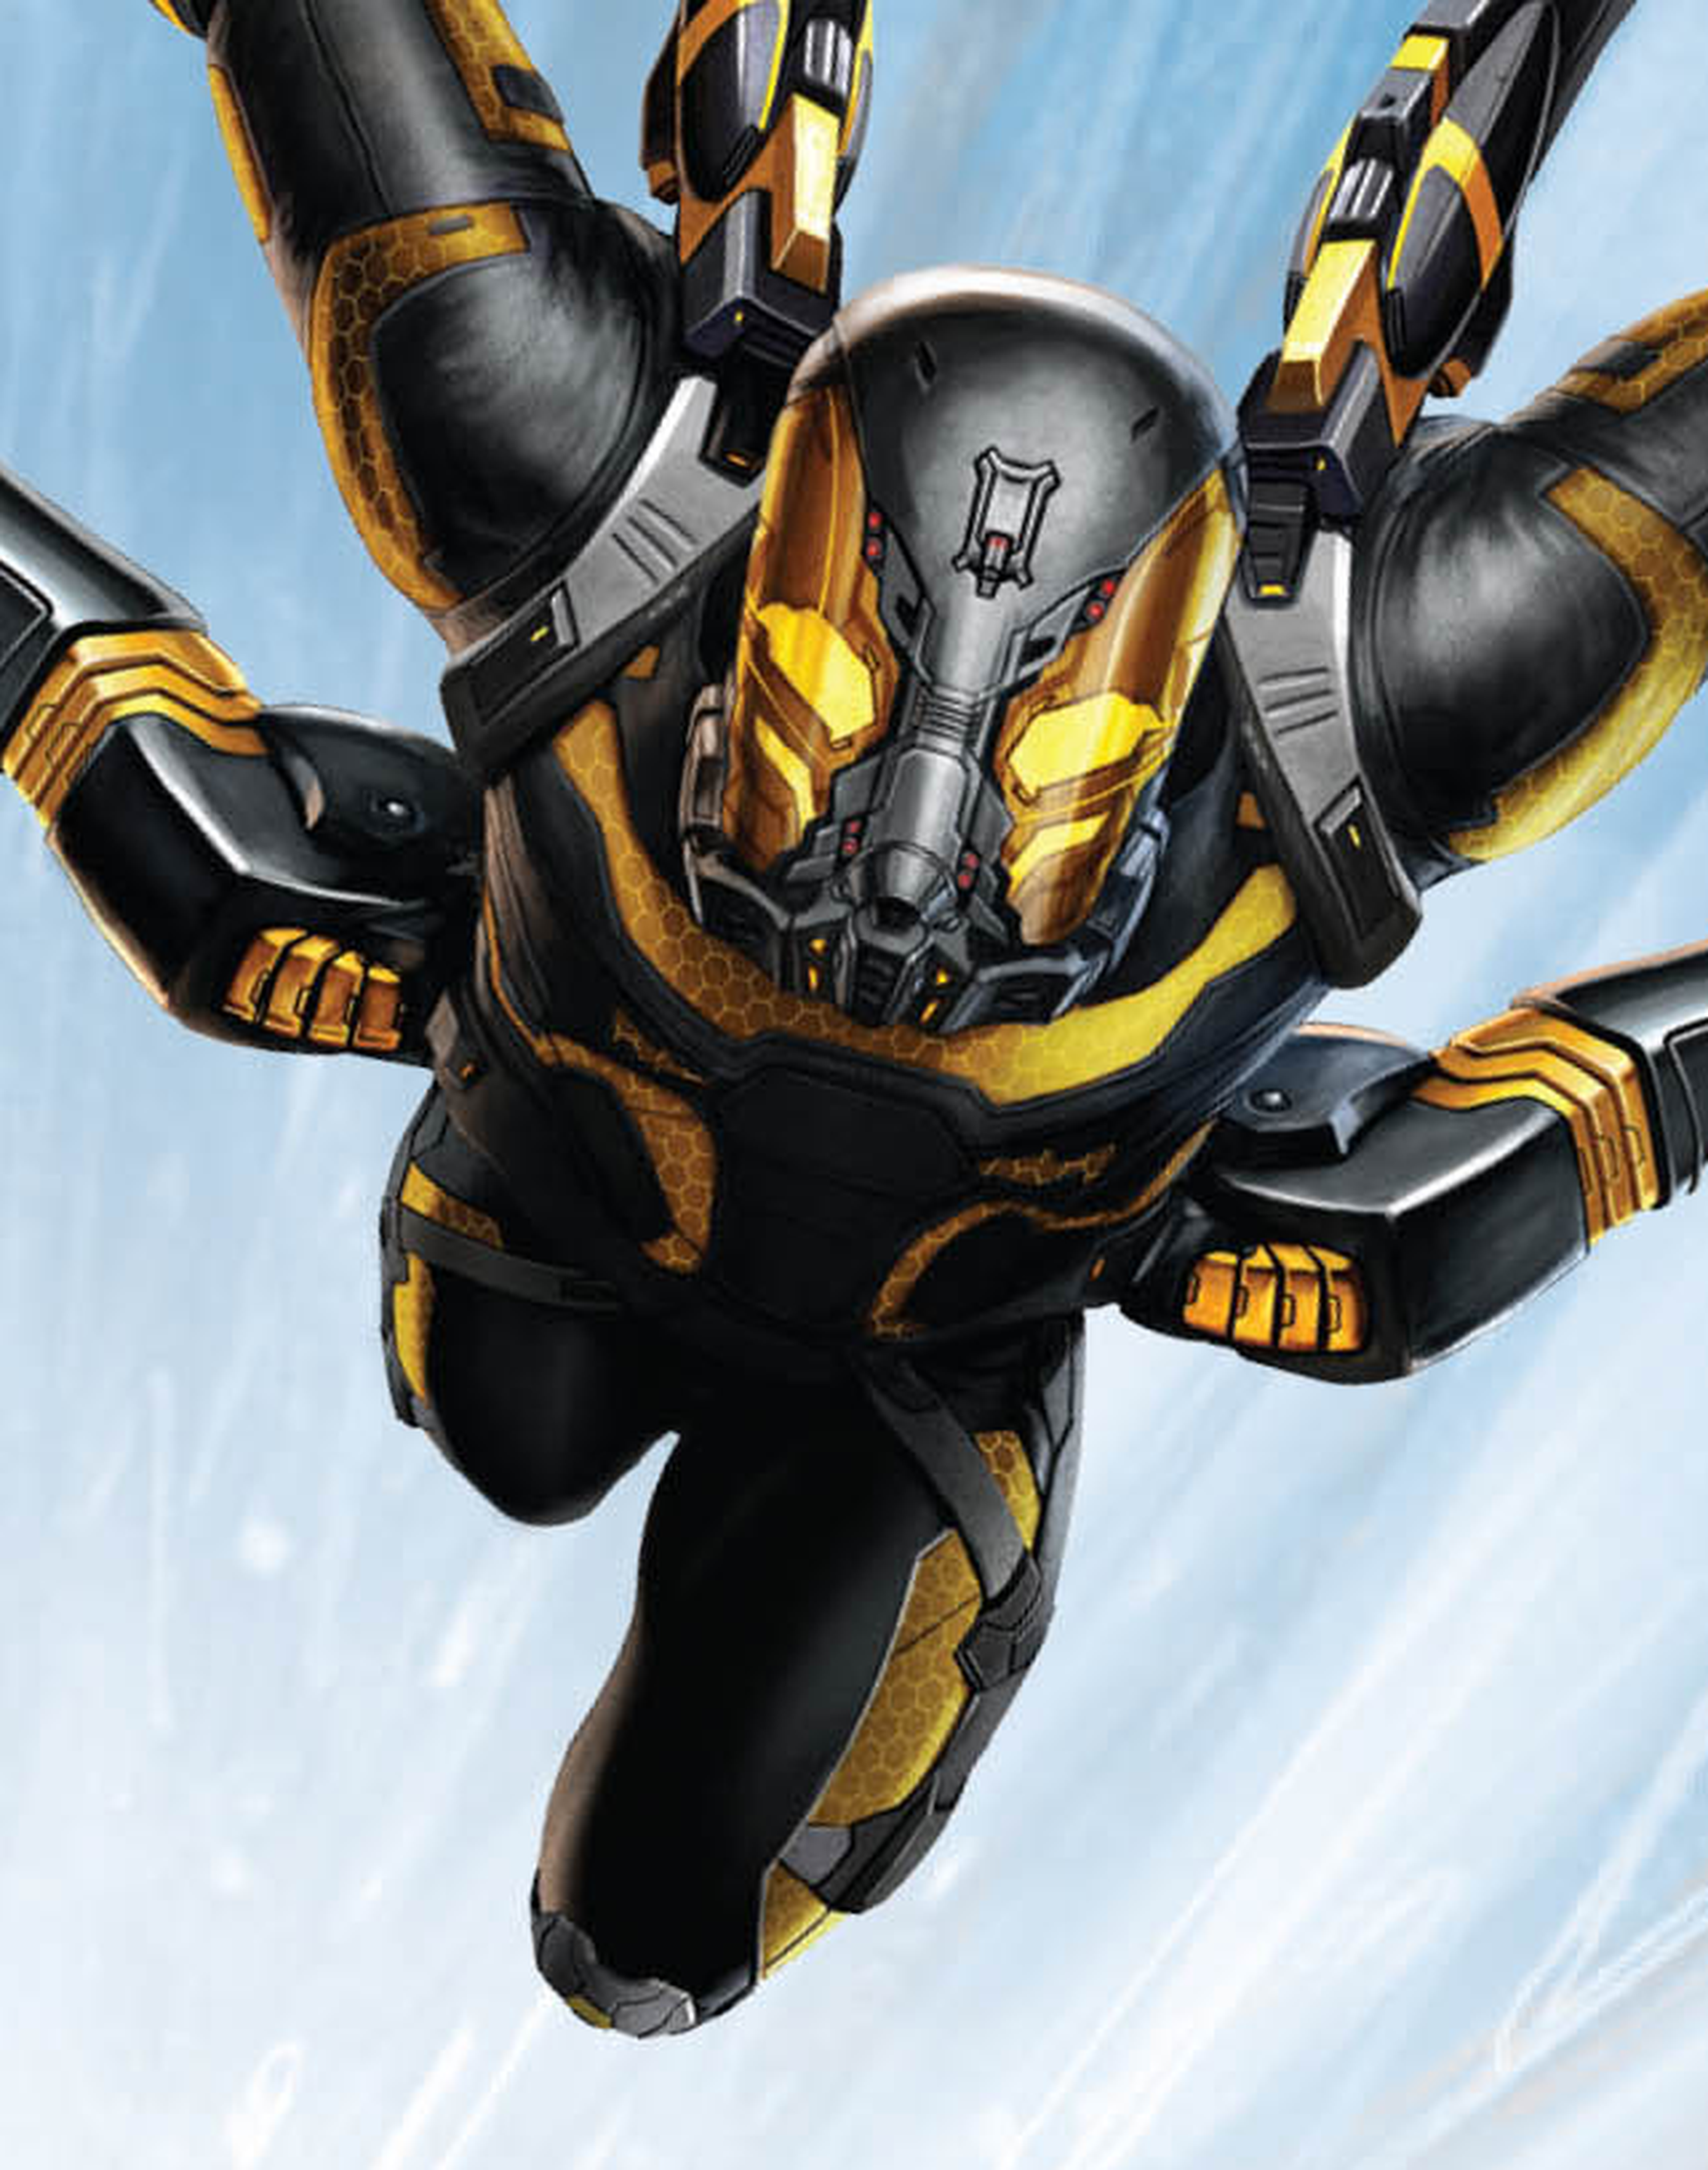 Imagen oficial de Chaqueta Amarilla, el villano de la película Ant-Man